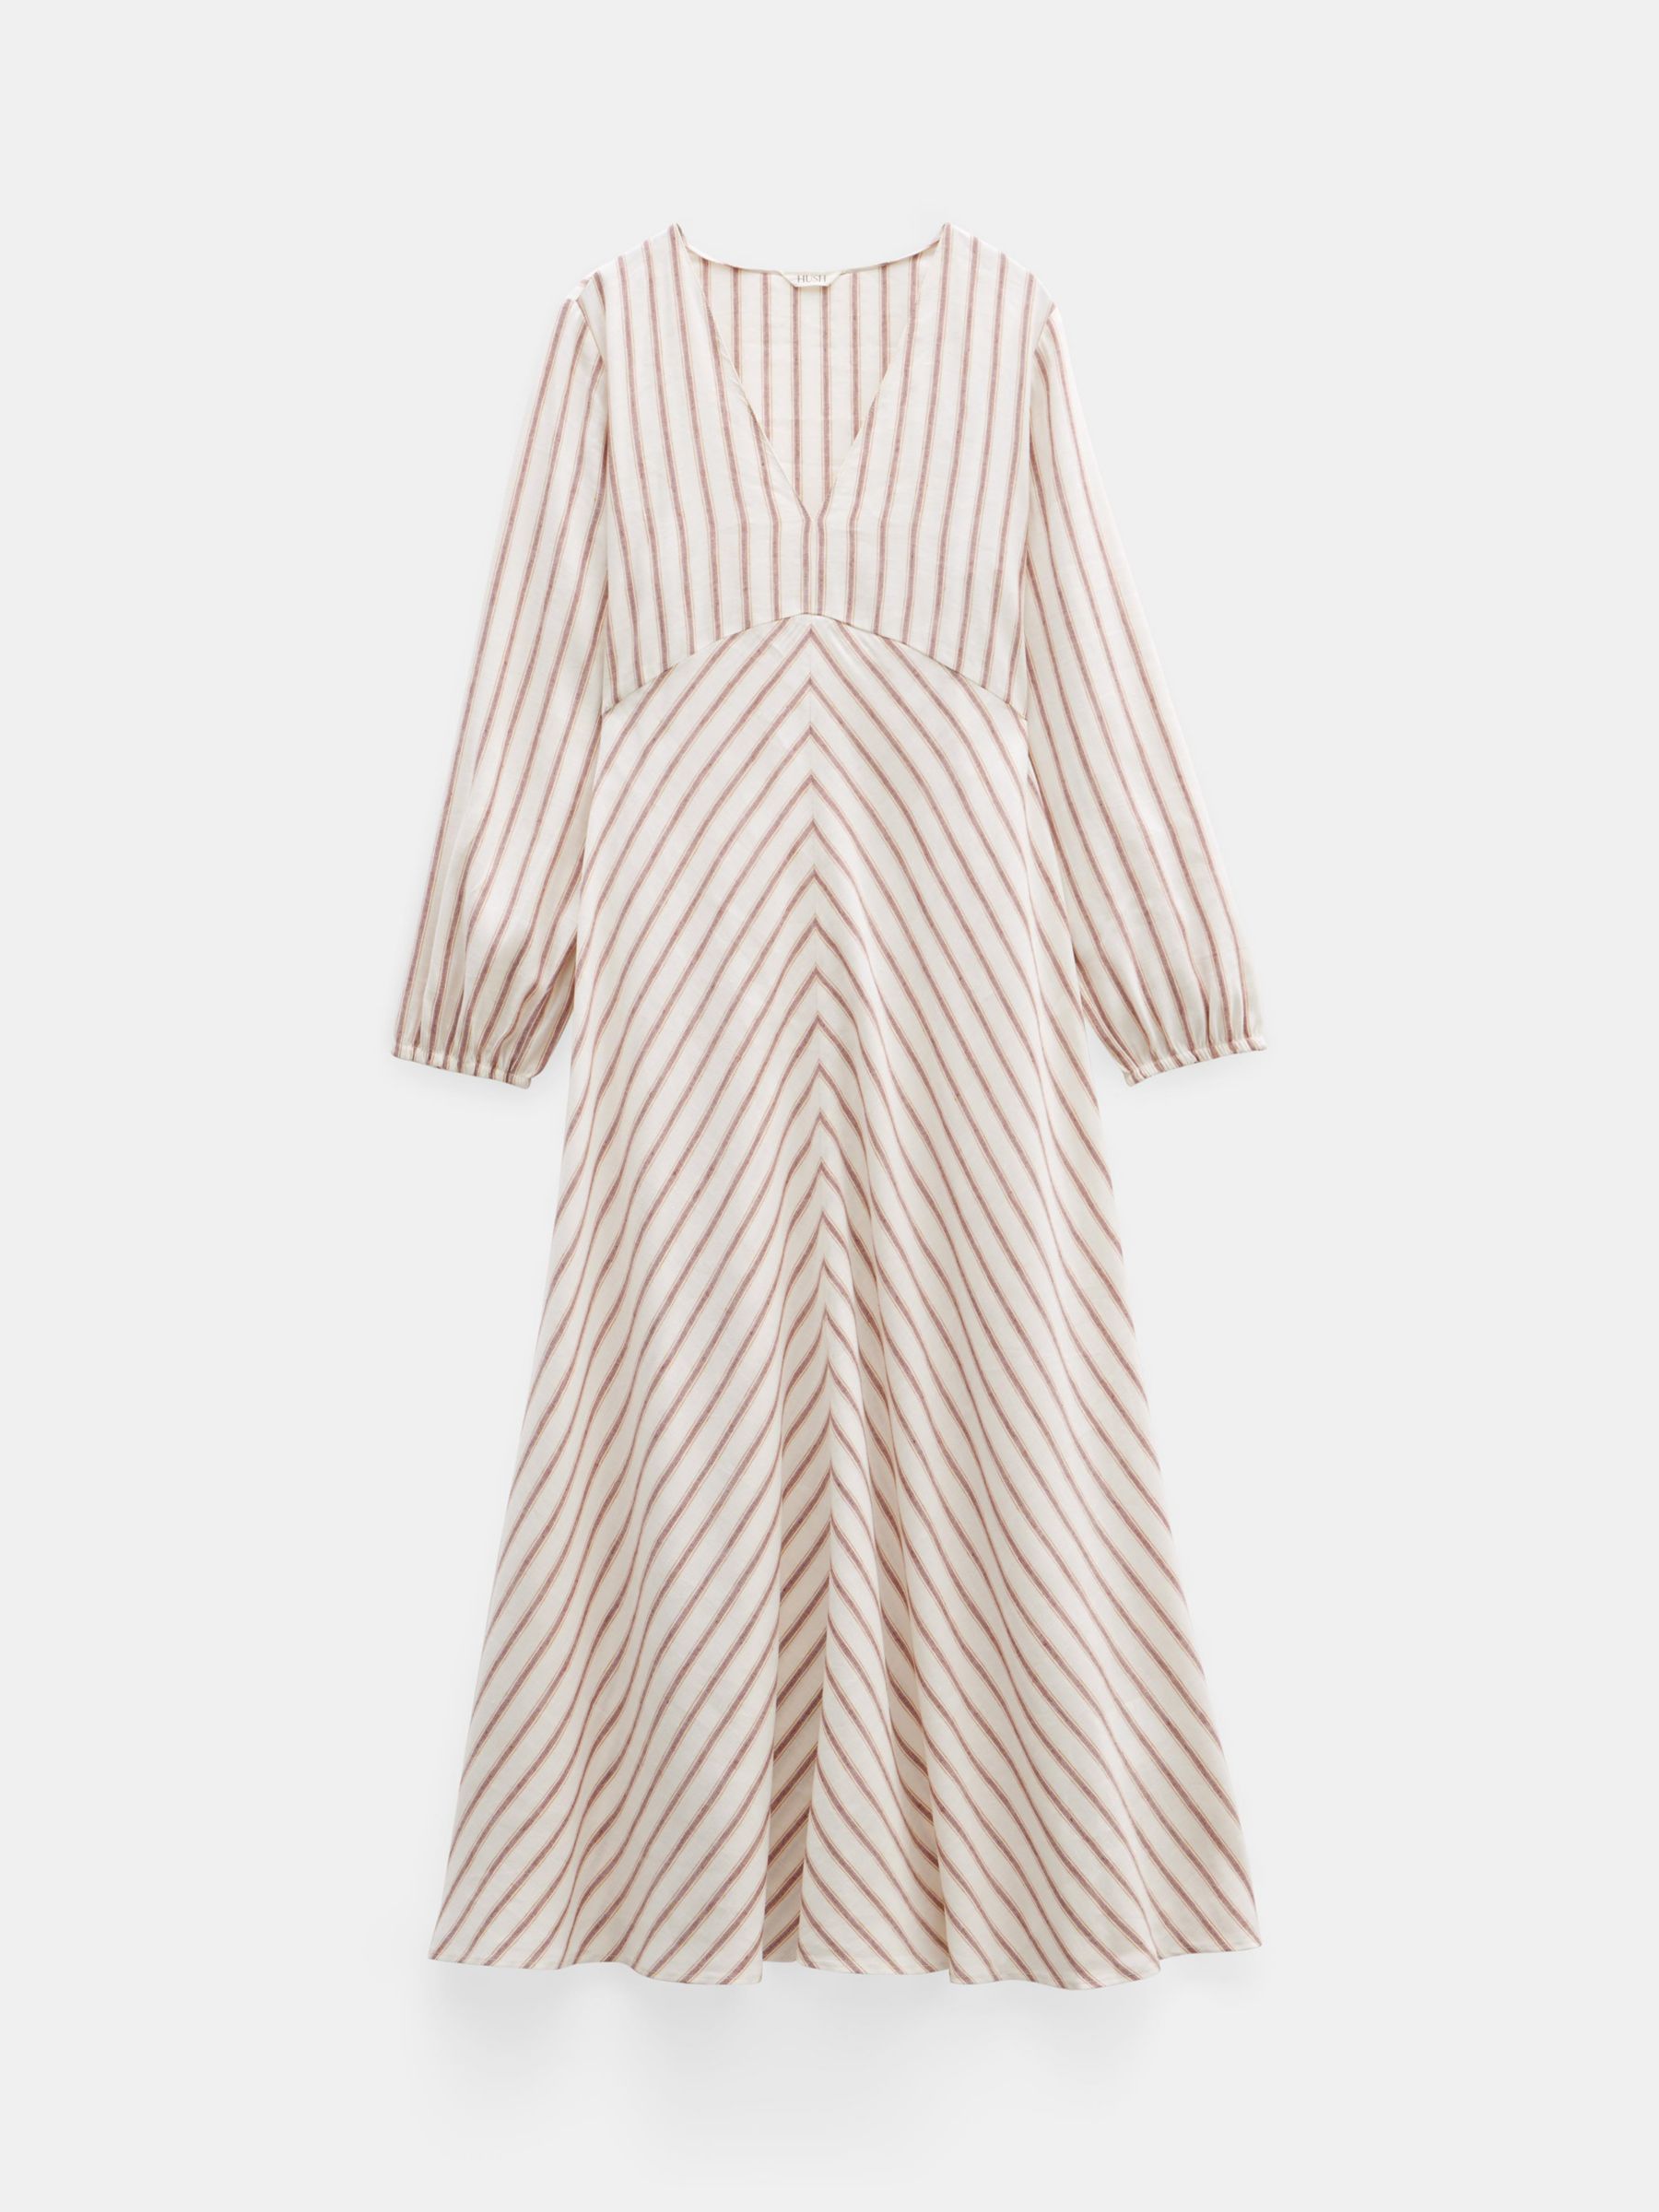 HUSH Aine Stripe Linen Blend Maxi Dress, White, 10